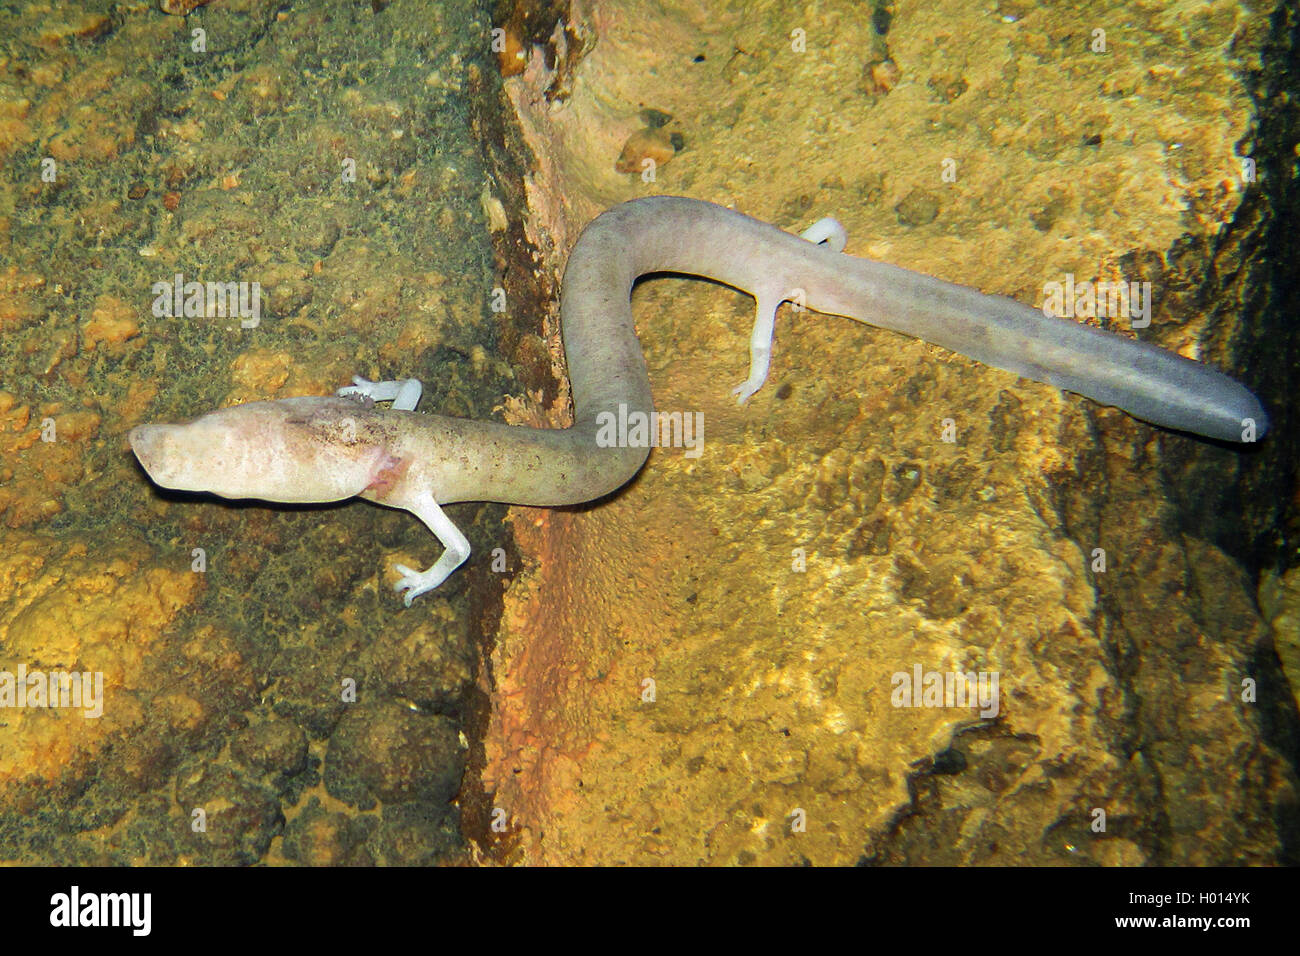 Unión olm (blind ajolote) (Proteus anguinus), bajo el agua en una roca, vista desde arriba, Eslovenia Foto de stock